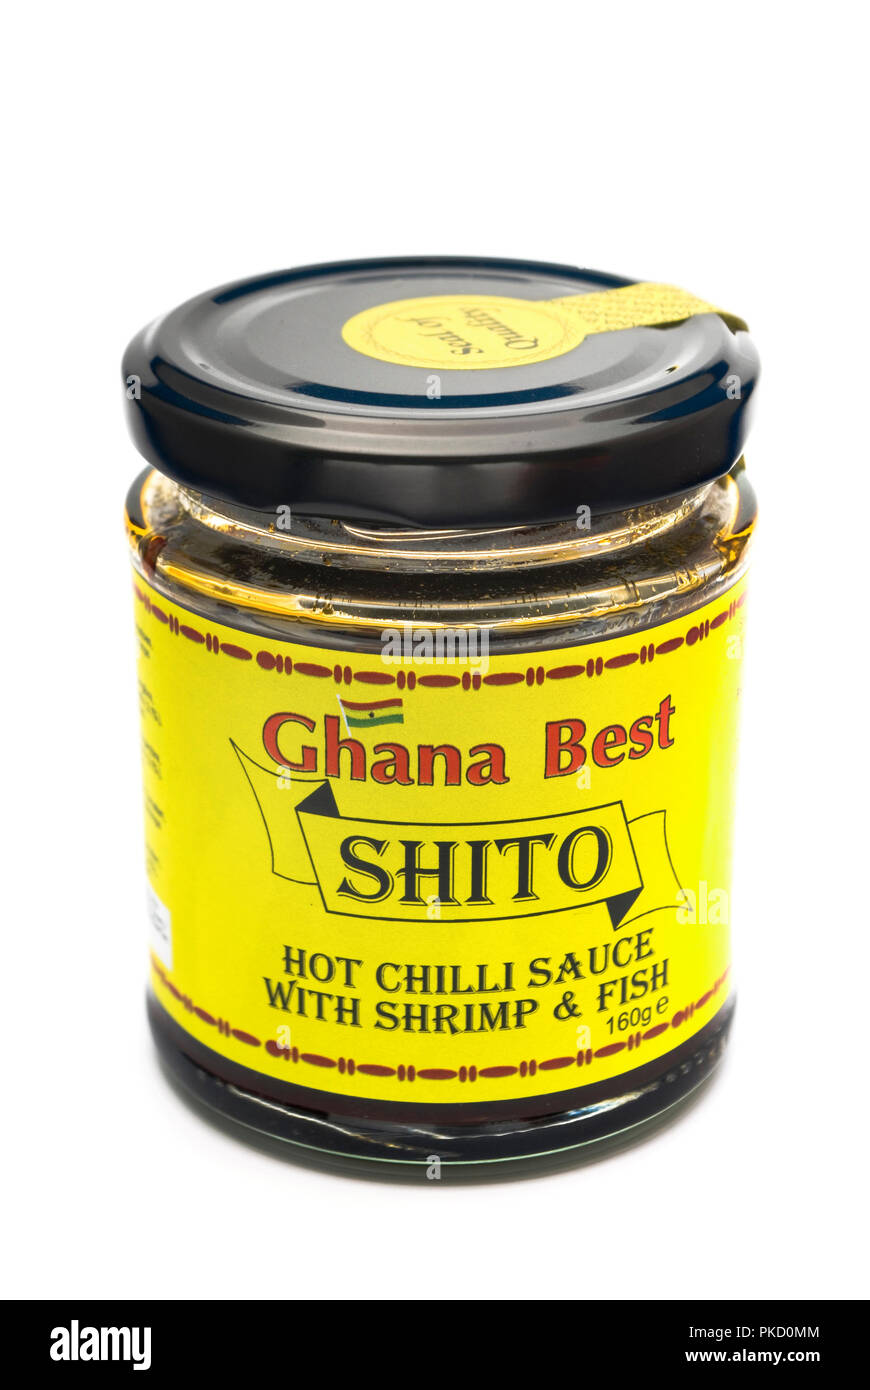 Ghana Best Shito Hot Chili Sauce Stock Photo